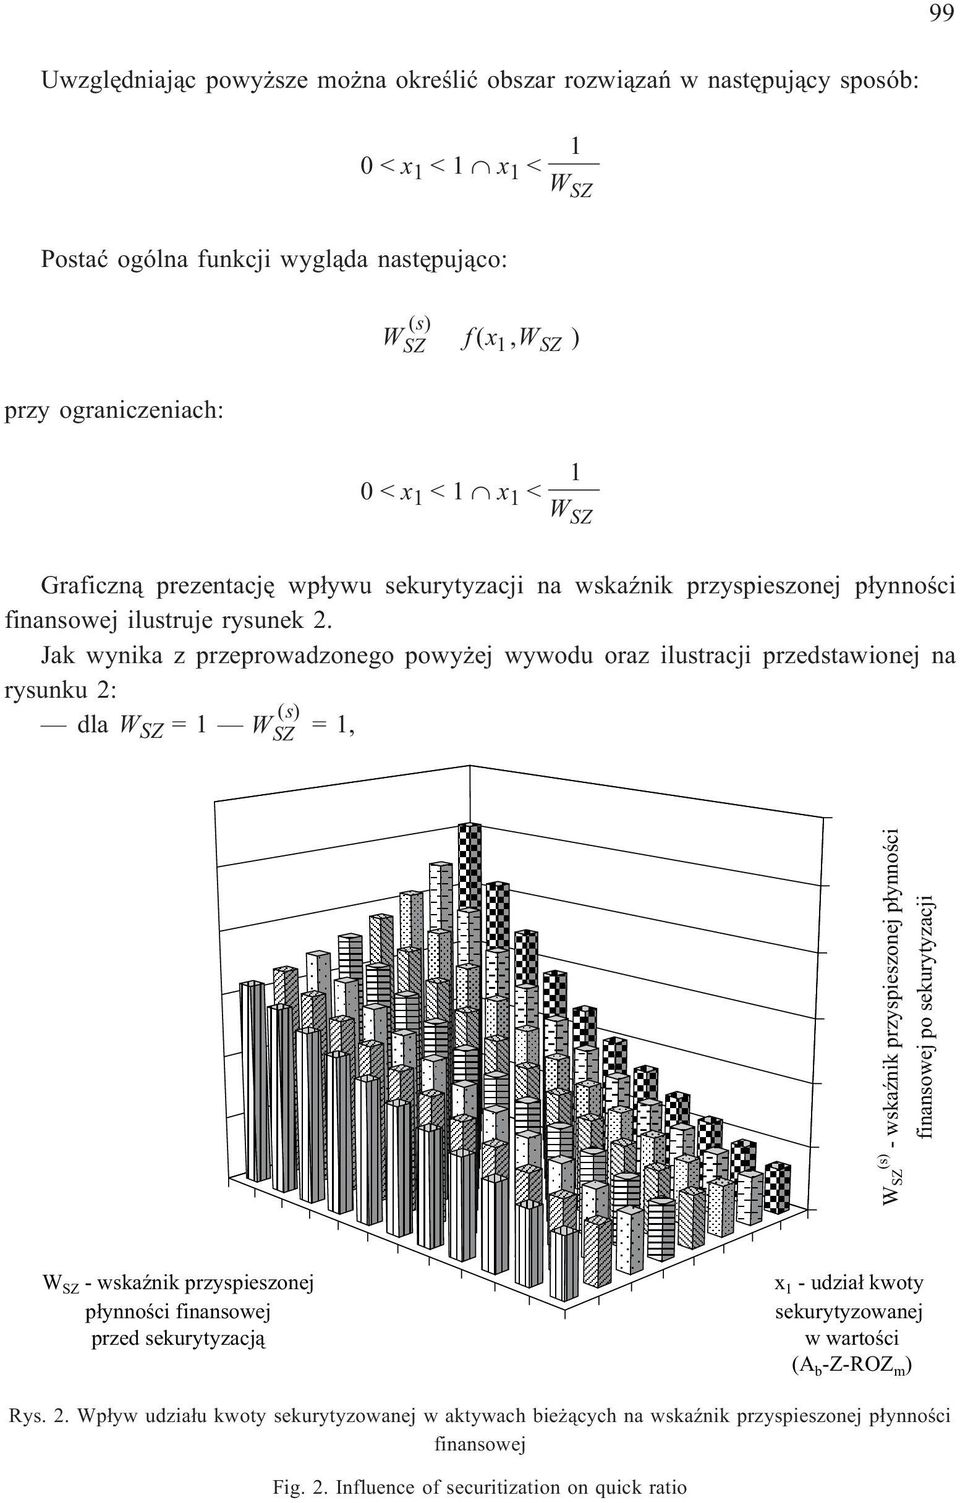 Jak wynika z przeprowadzonego powy ej wywodu oraz ilustracji przedstawionej na rysunku 2: dla Z =1 Z =1, Z (s) - wskaÿnik przyspieszonej p³ynnoœci finansowej po sekurytyzacji Z - wskaÿnik